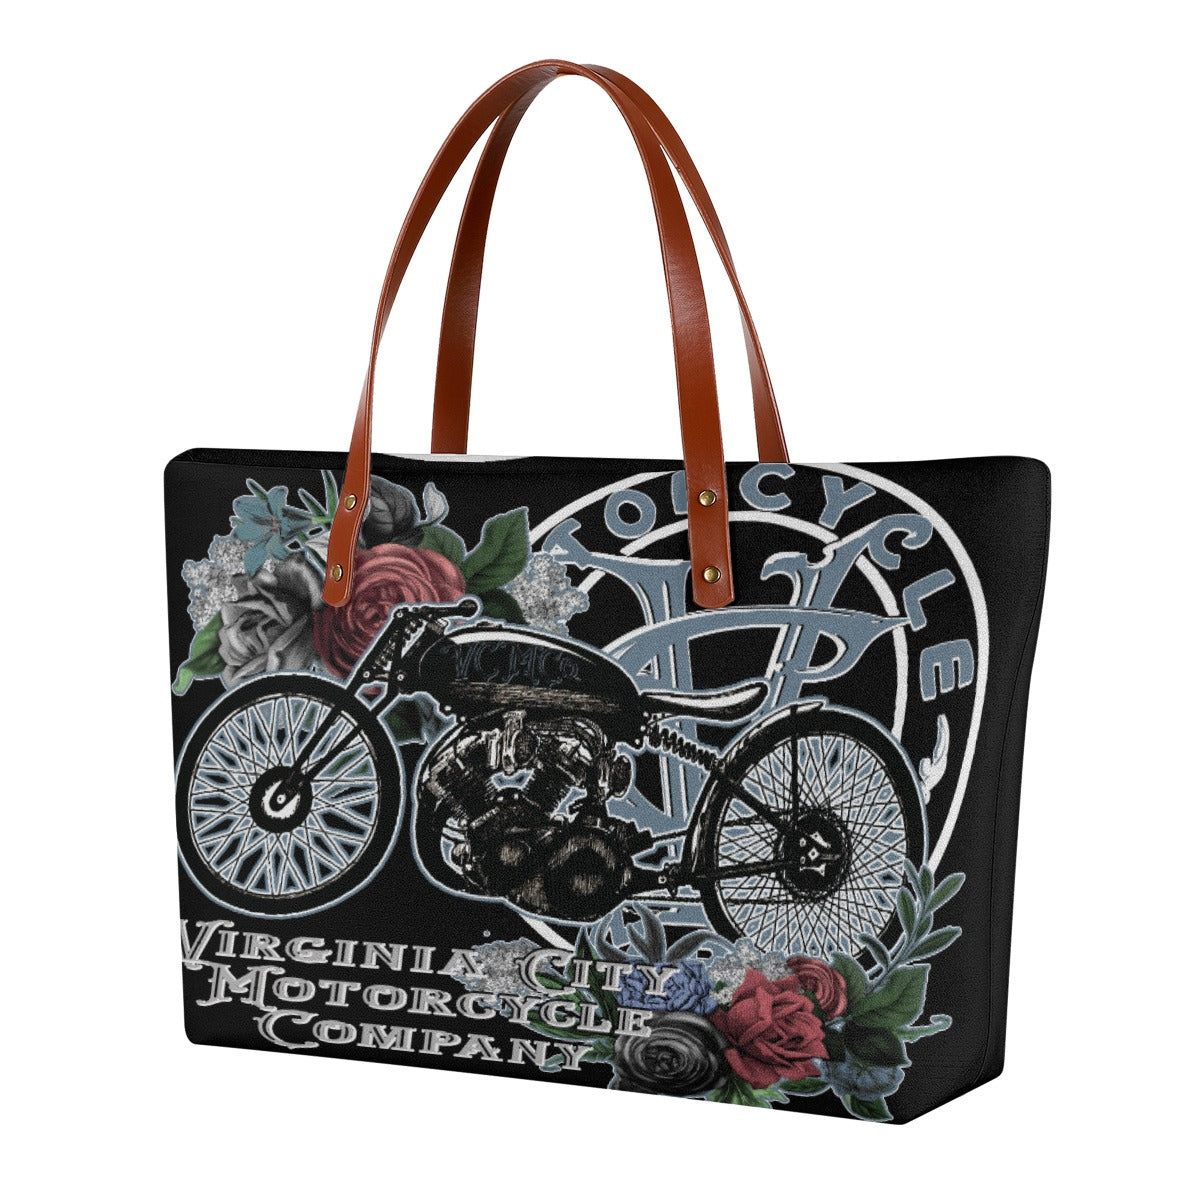 Vintage Lady Rider Tote Bag Virginia City Motorcycle Company Apparel 